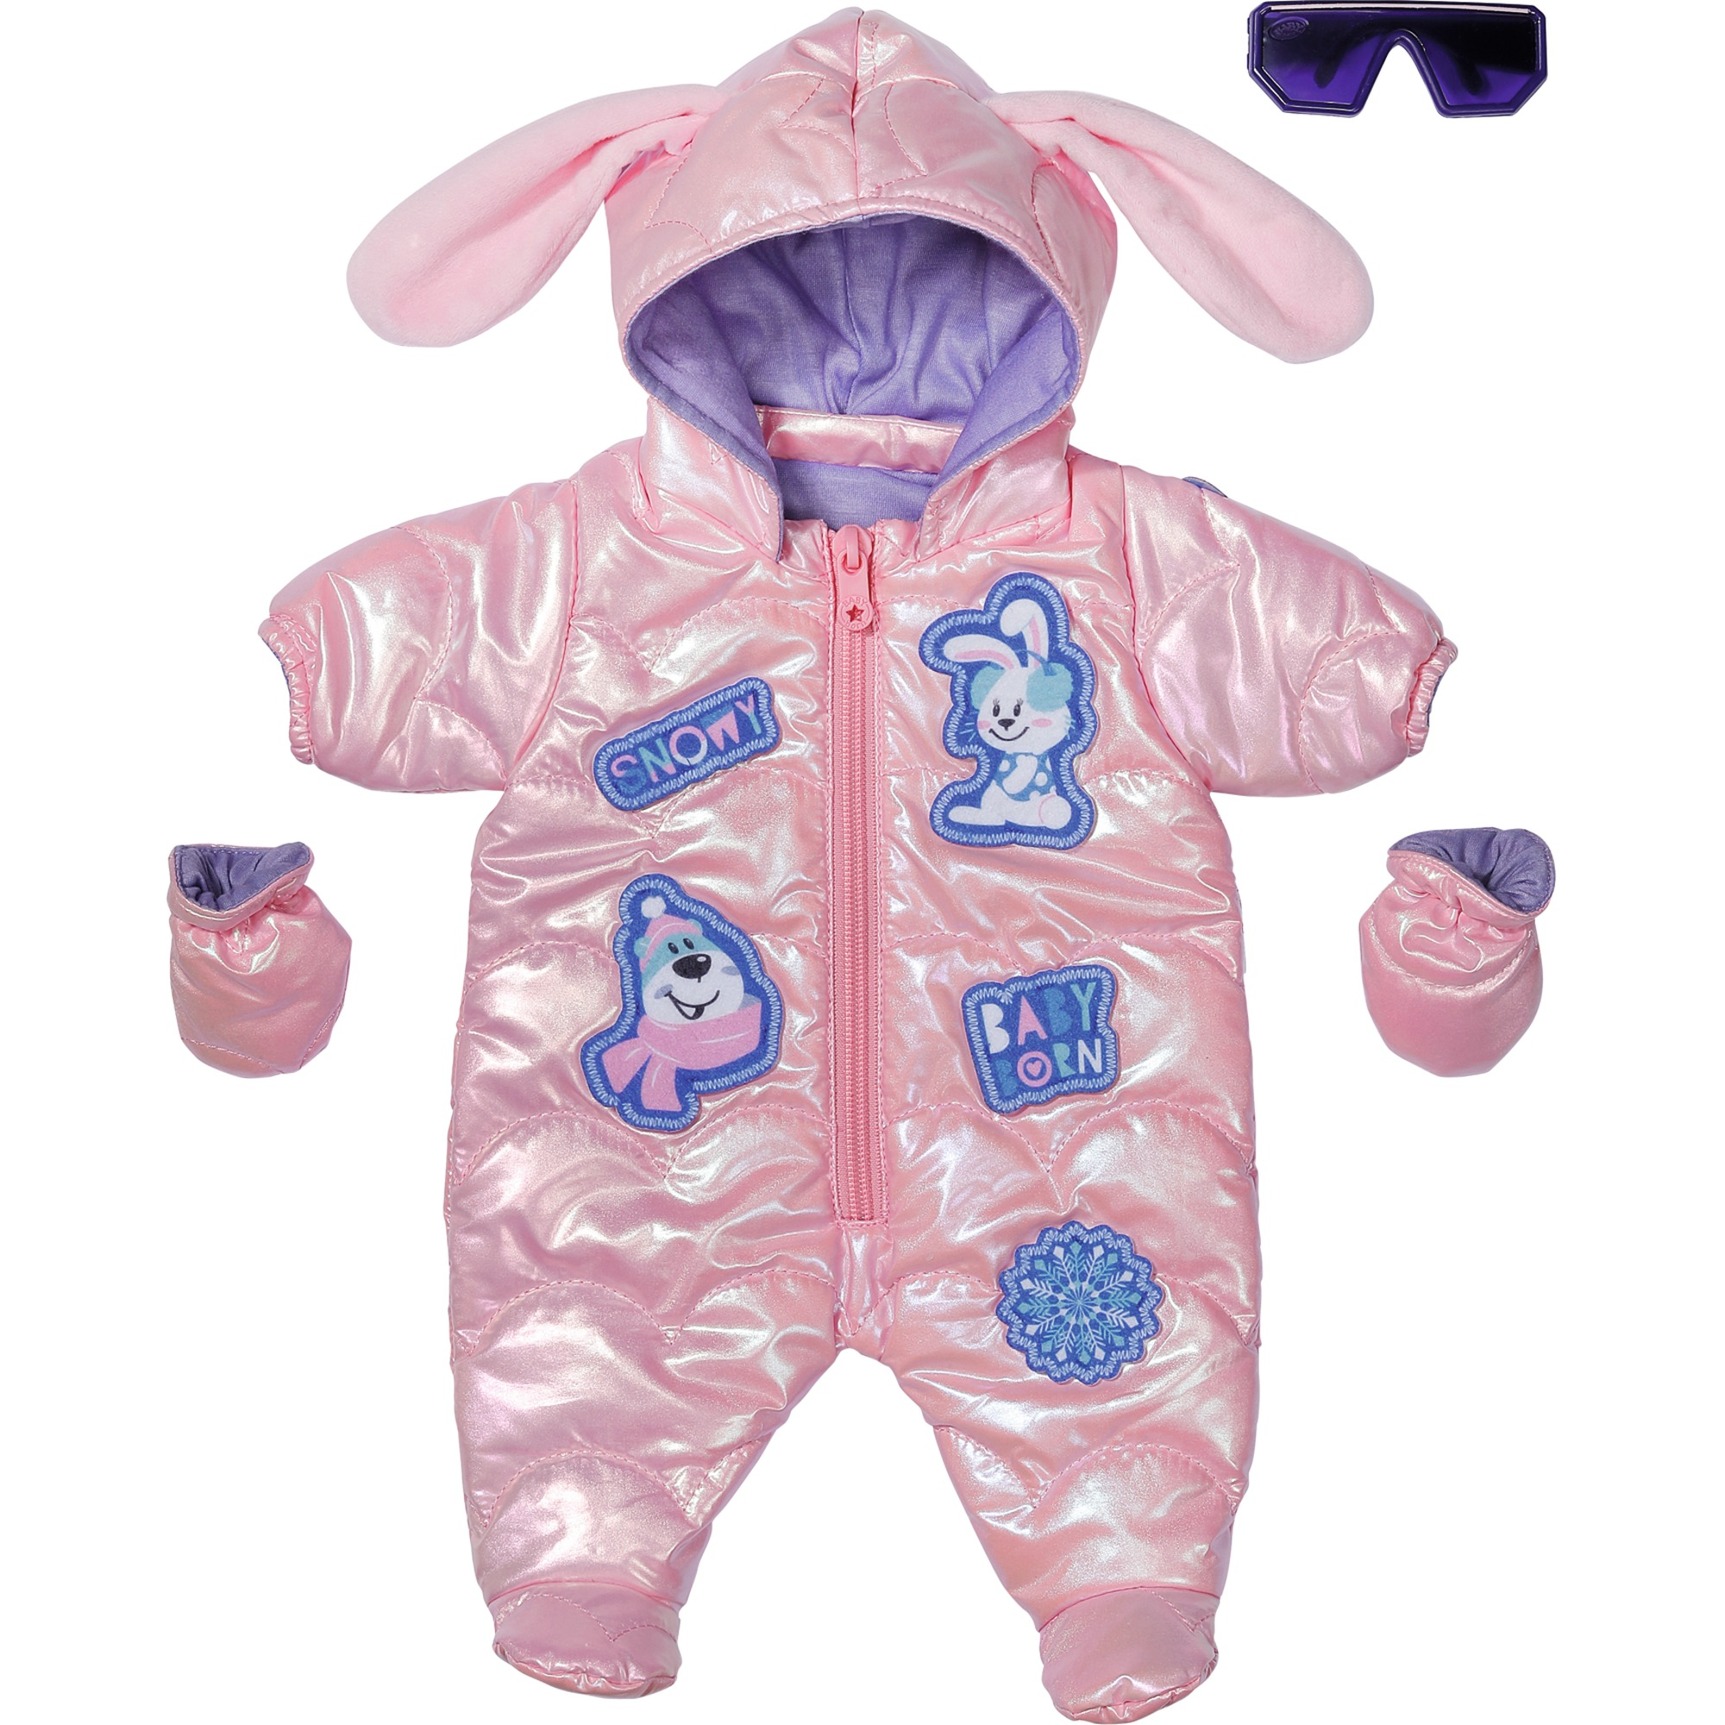 Zapf Creation, Baby Born Deluxe Schneeanzug 43cm, Skianzug für 43 cm große Puppen in metallic rosa mit Handschuhen und Sonnenbrille, 834190